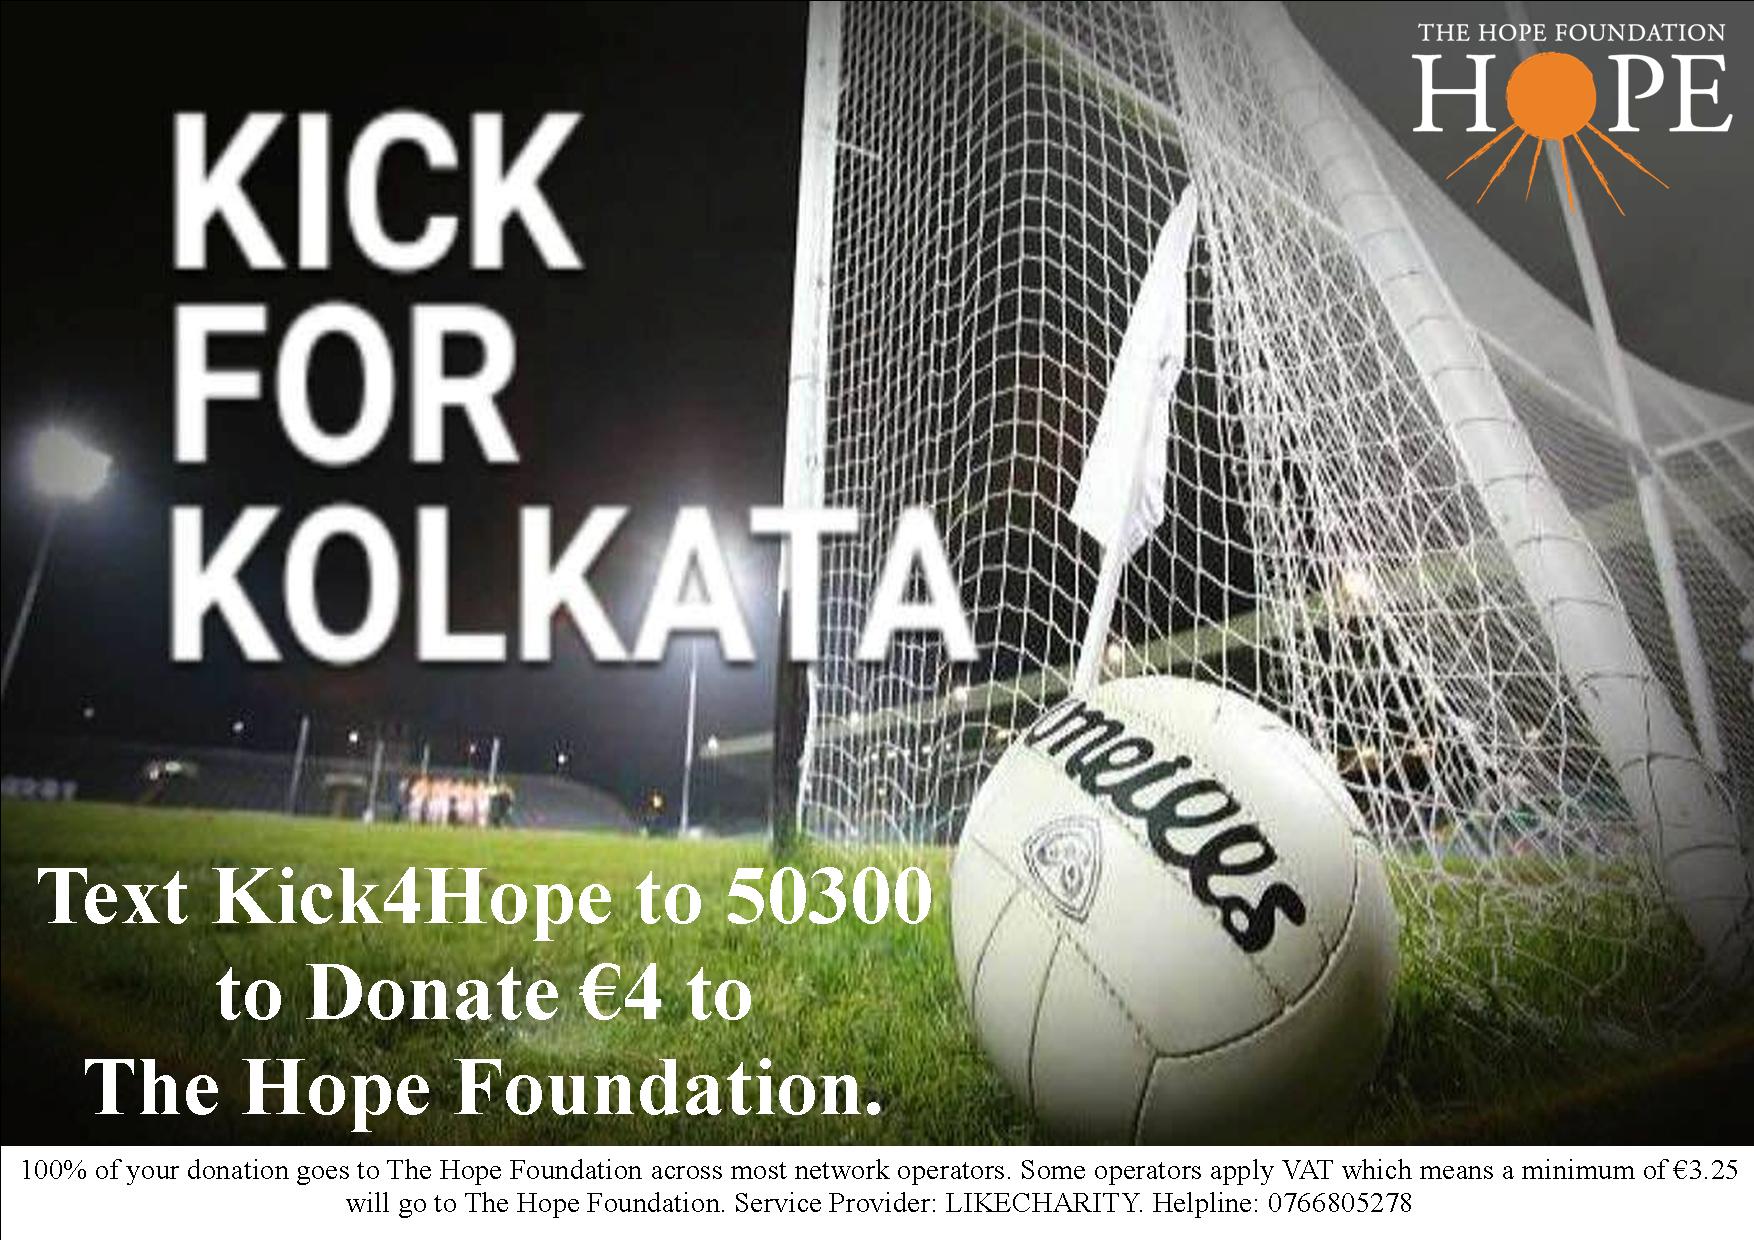 Kick for Kolkata